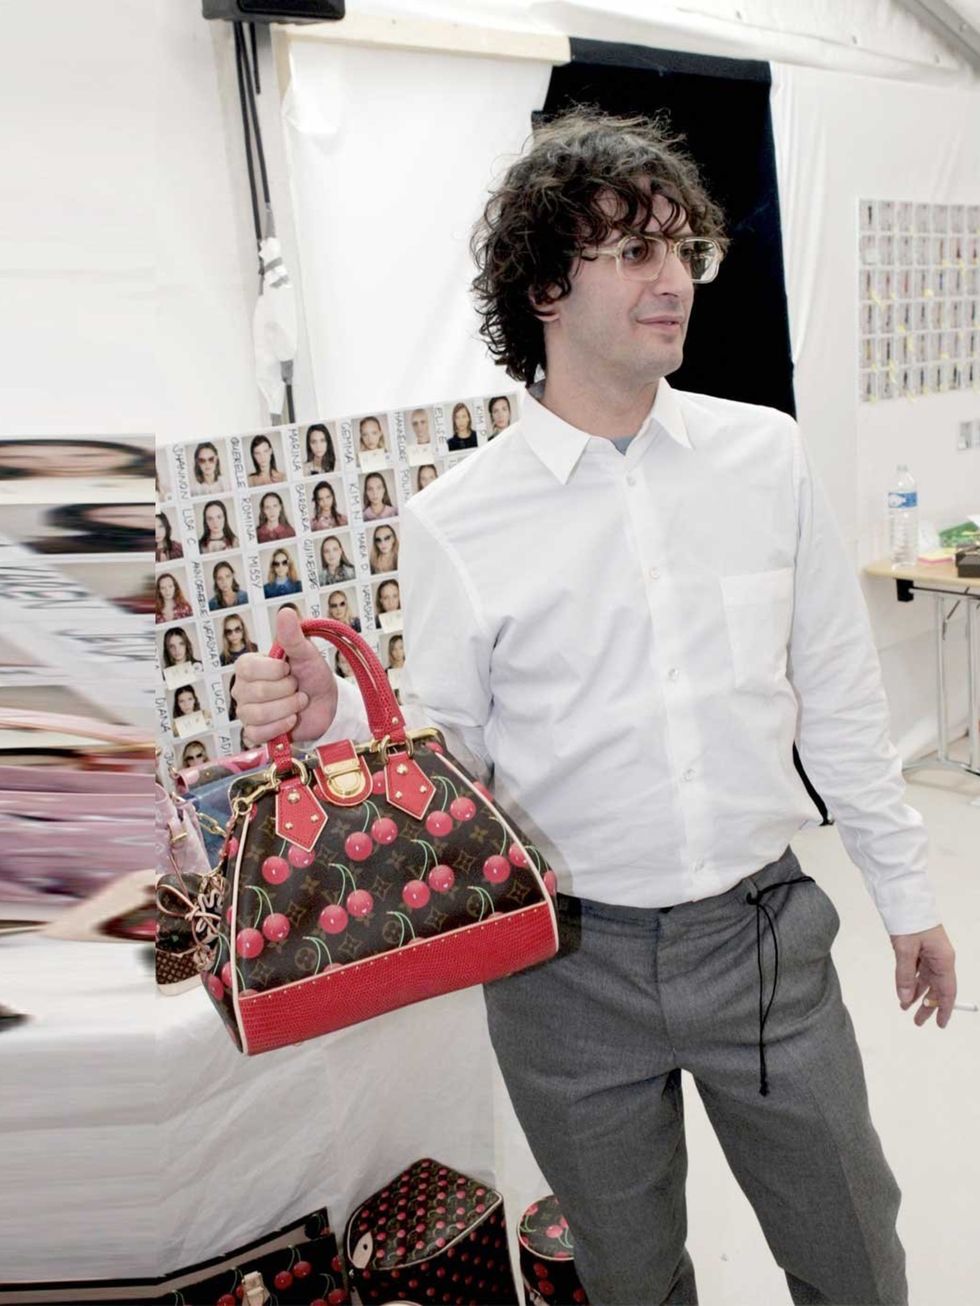 Marc Jacobs for Louis Vuitton: A Retrospective